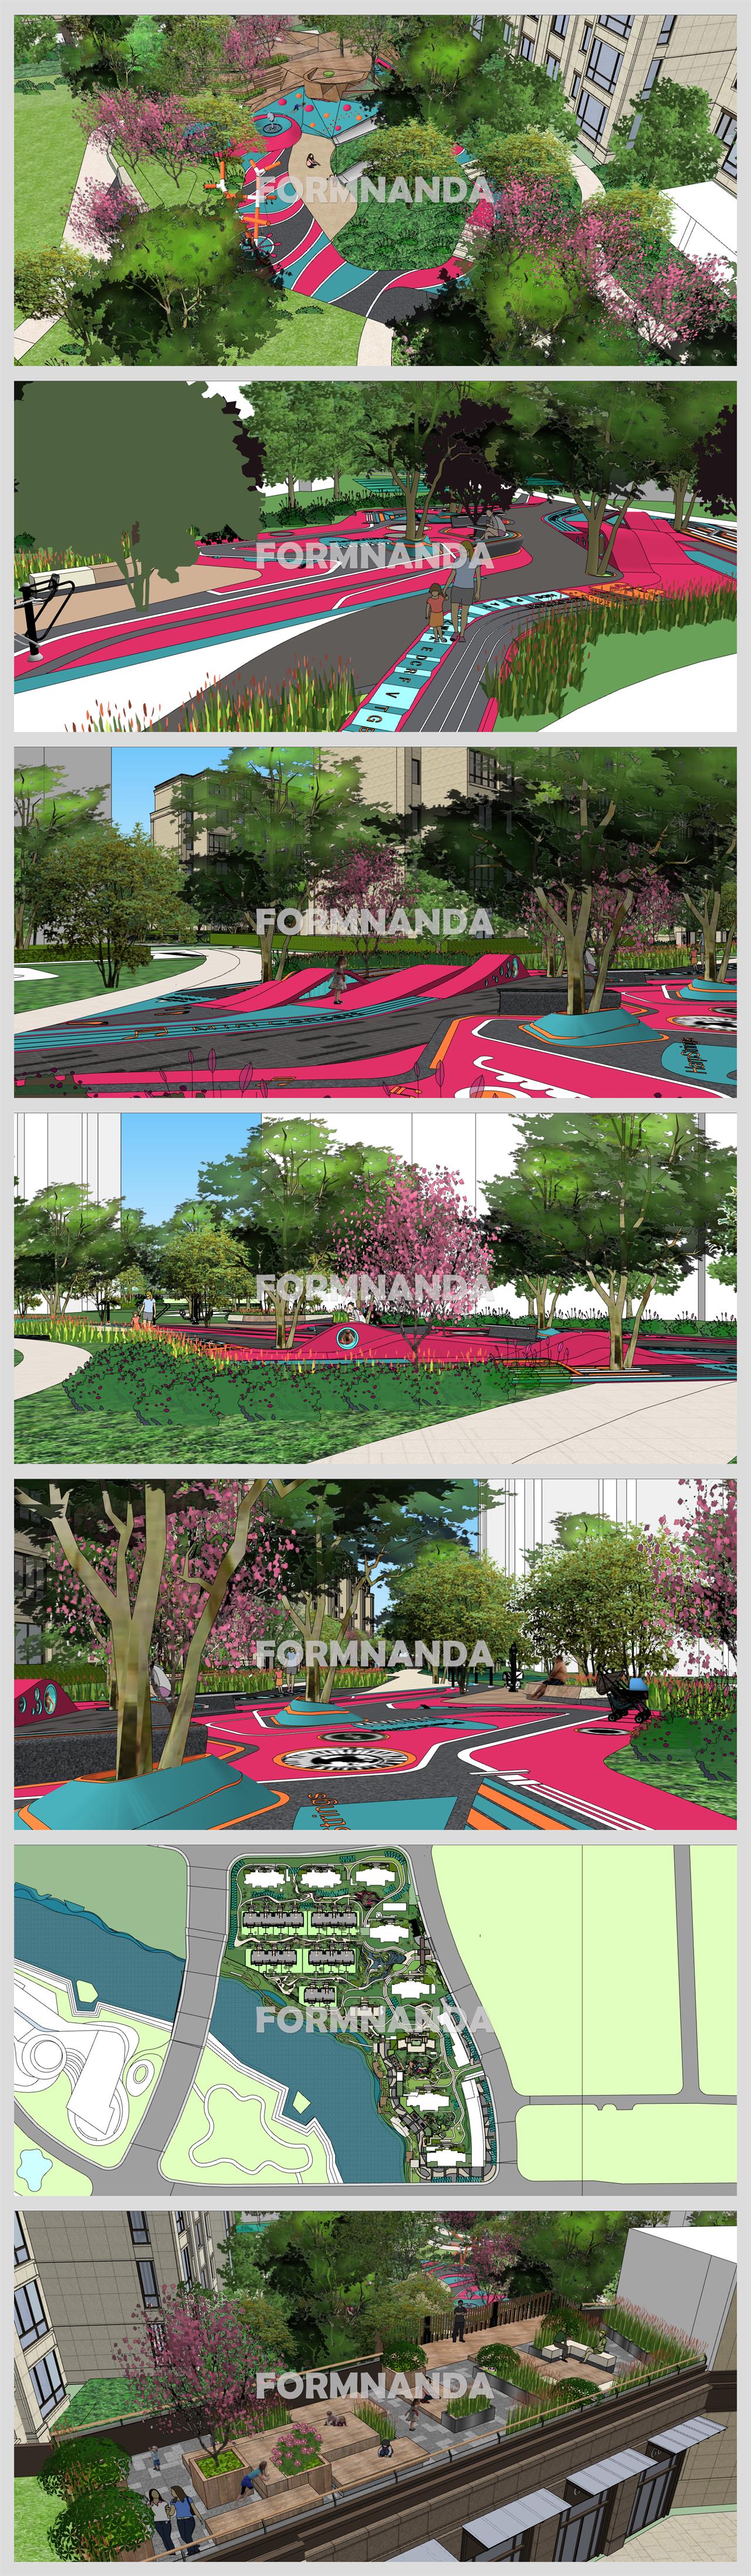 폼나는 공원광장 디자인 웹툰배경 샘플 사이트 상세보기